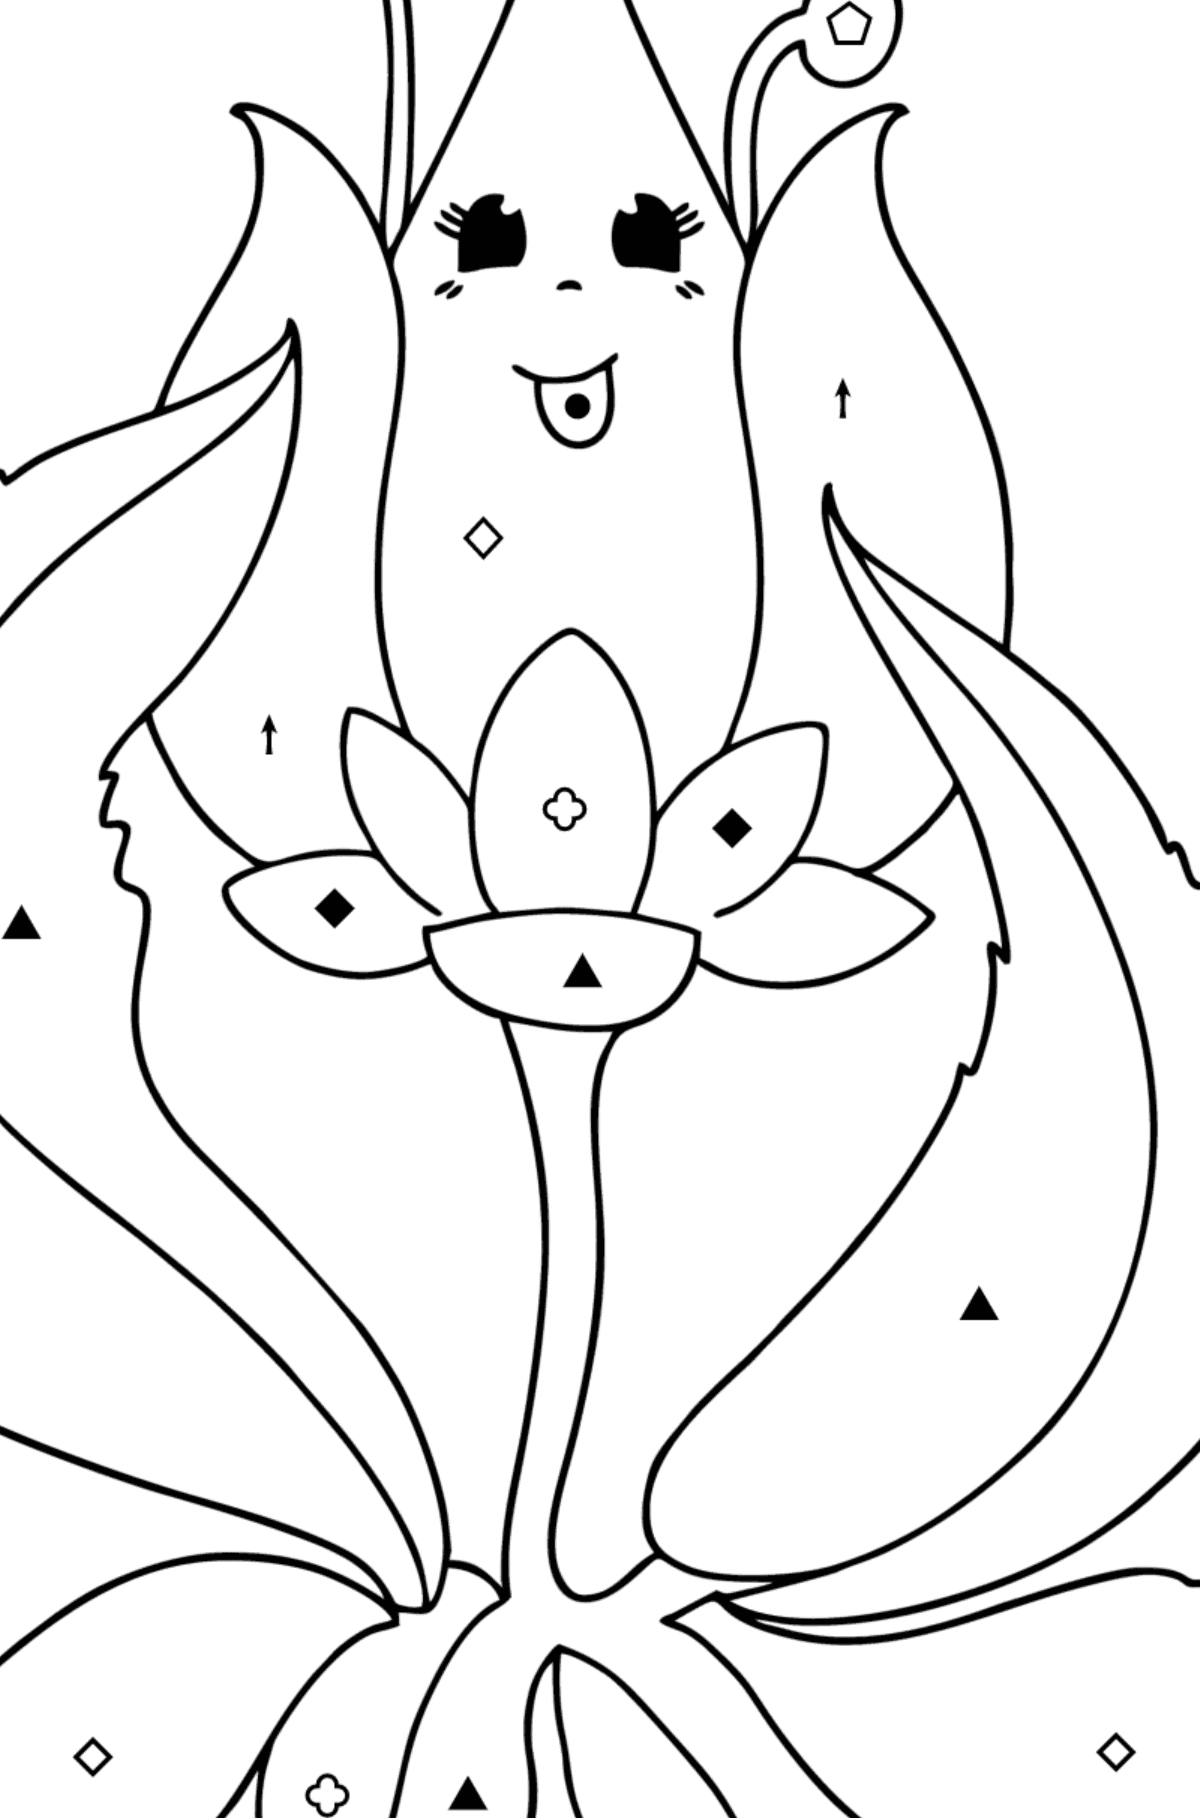 Målarbild blomknopp med ögon - Färgläggning efter symboler och av geometriska figurer För barn